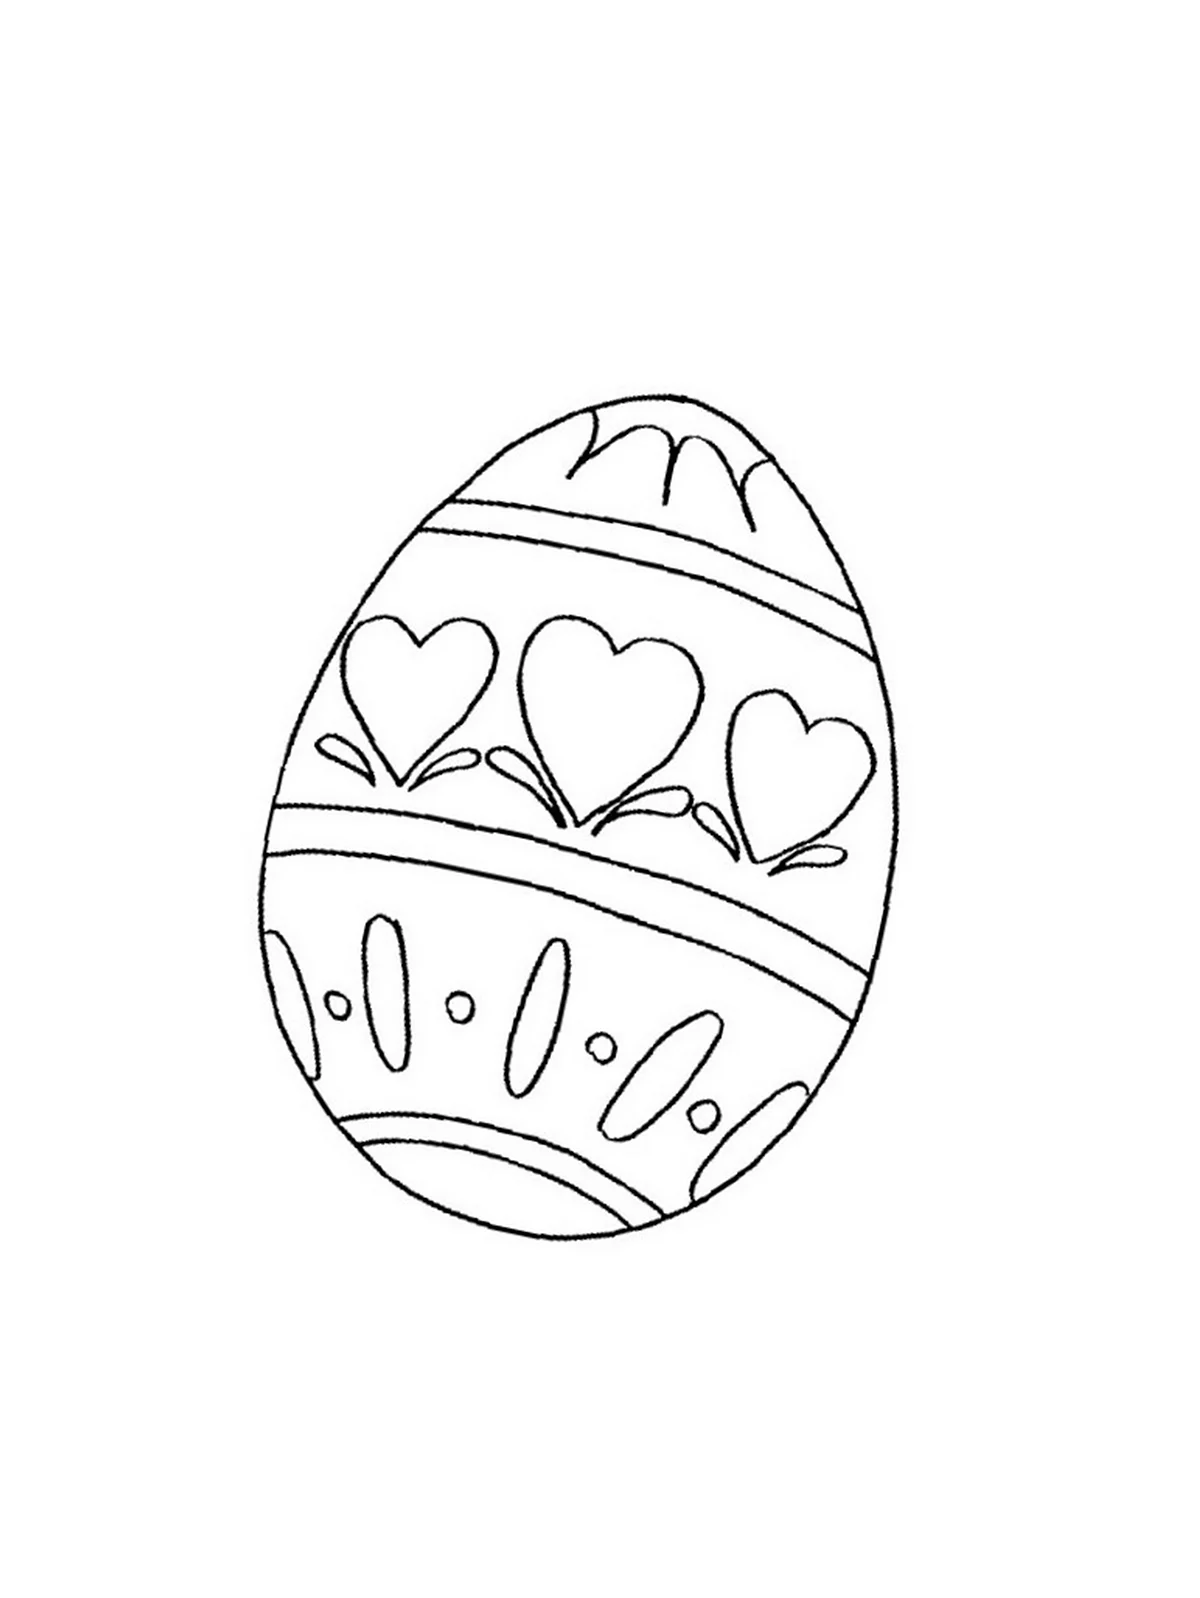 Пасхальное яйцо раскраска. Для срисовки